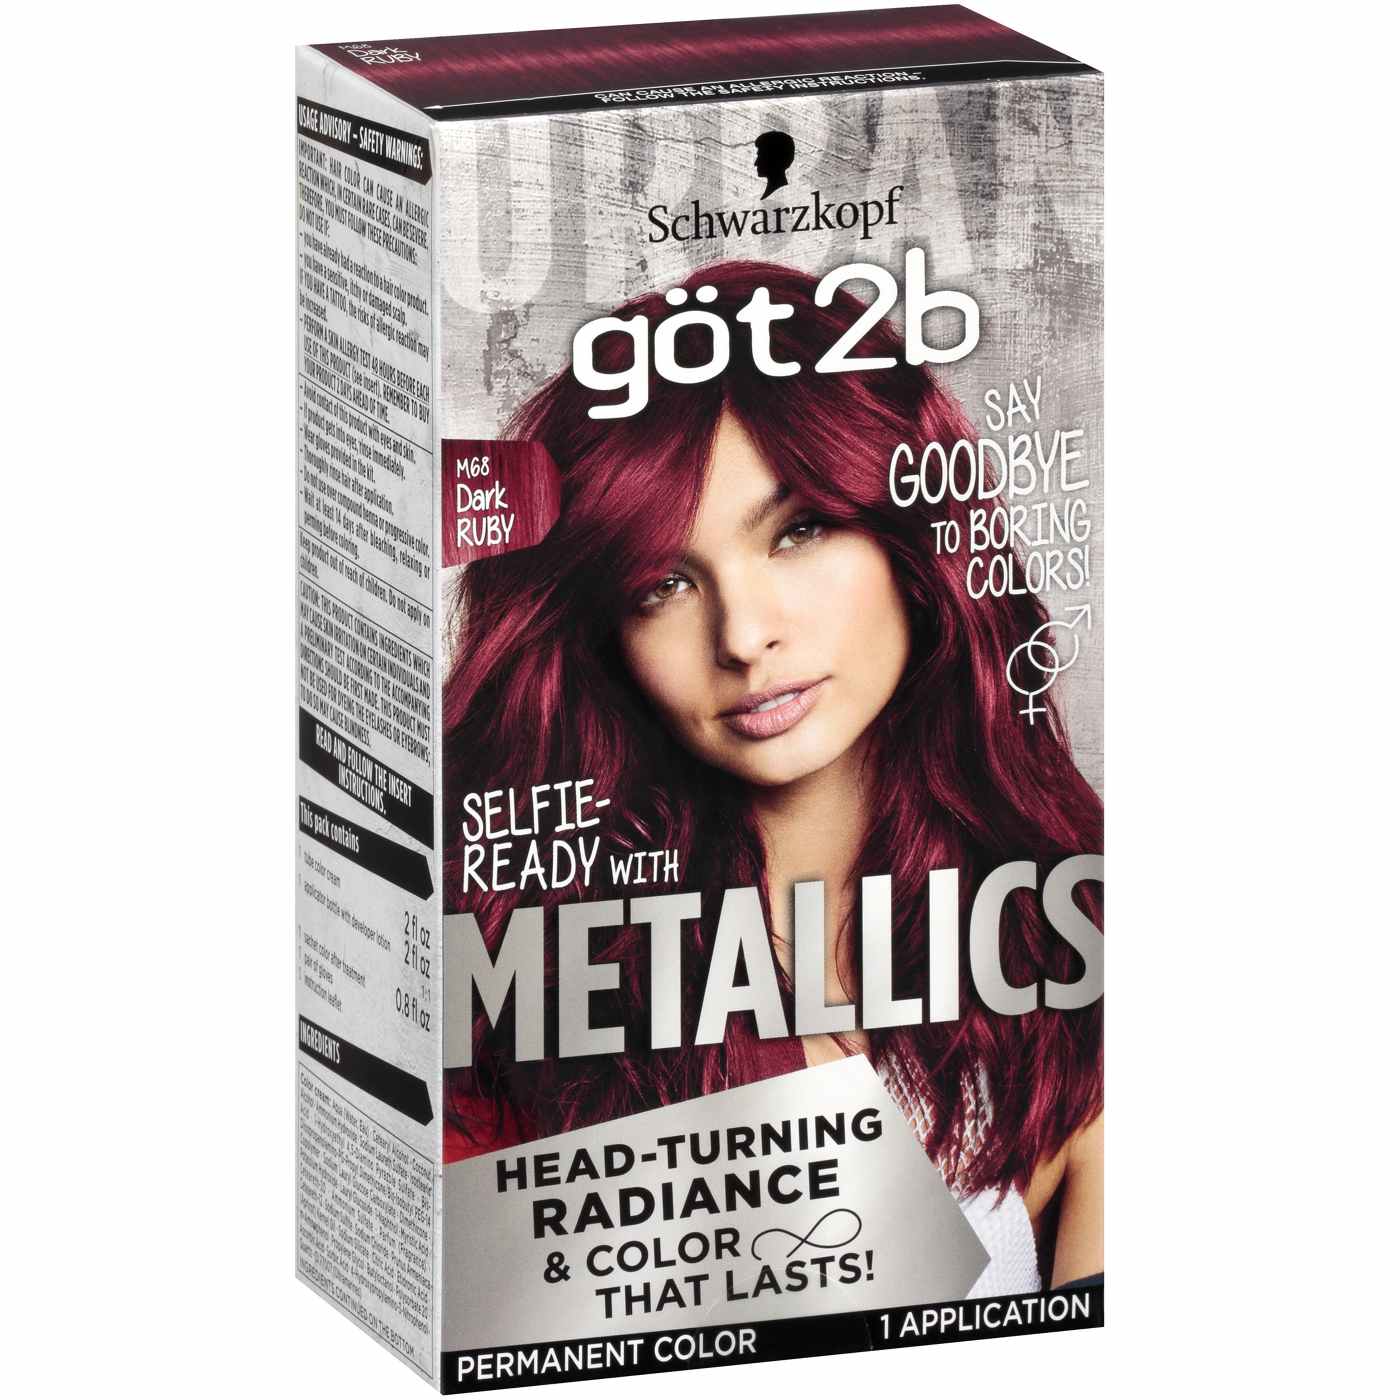 Got2b Metallics Permanent Hair Color, M68 Dark Ruby; image 2 of 4